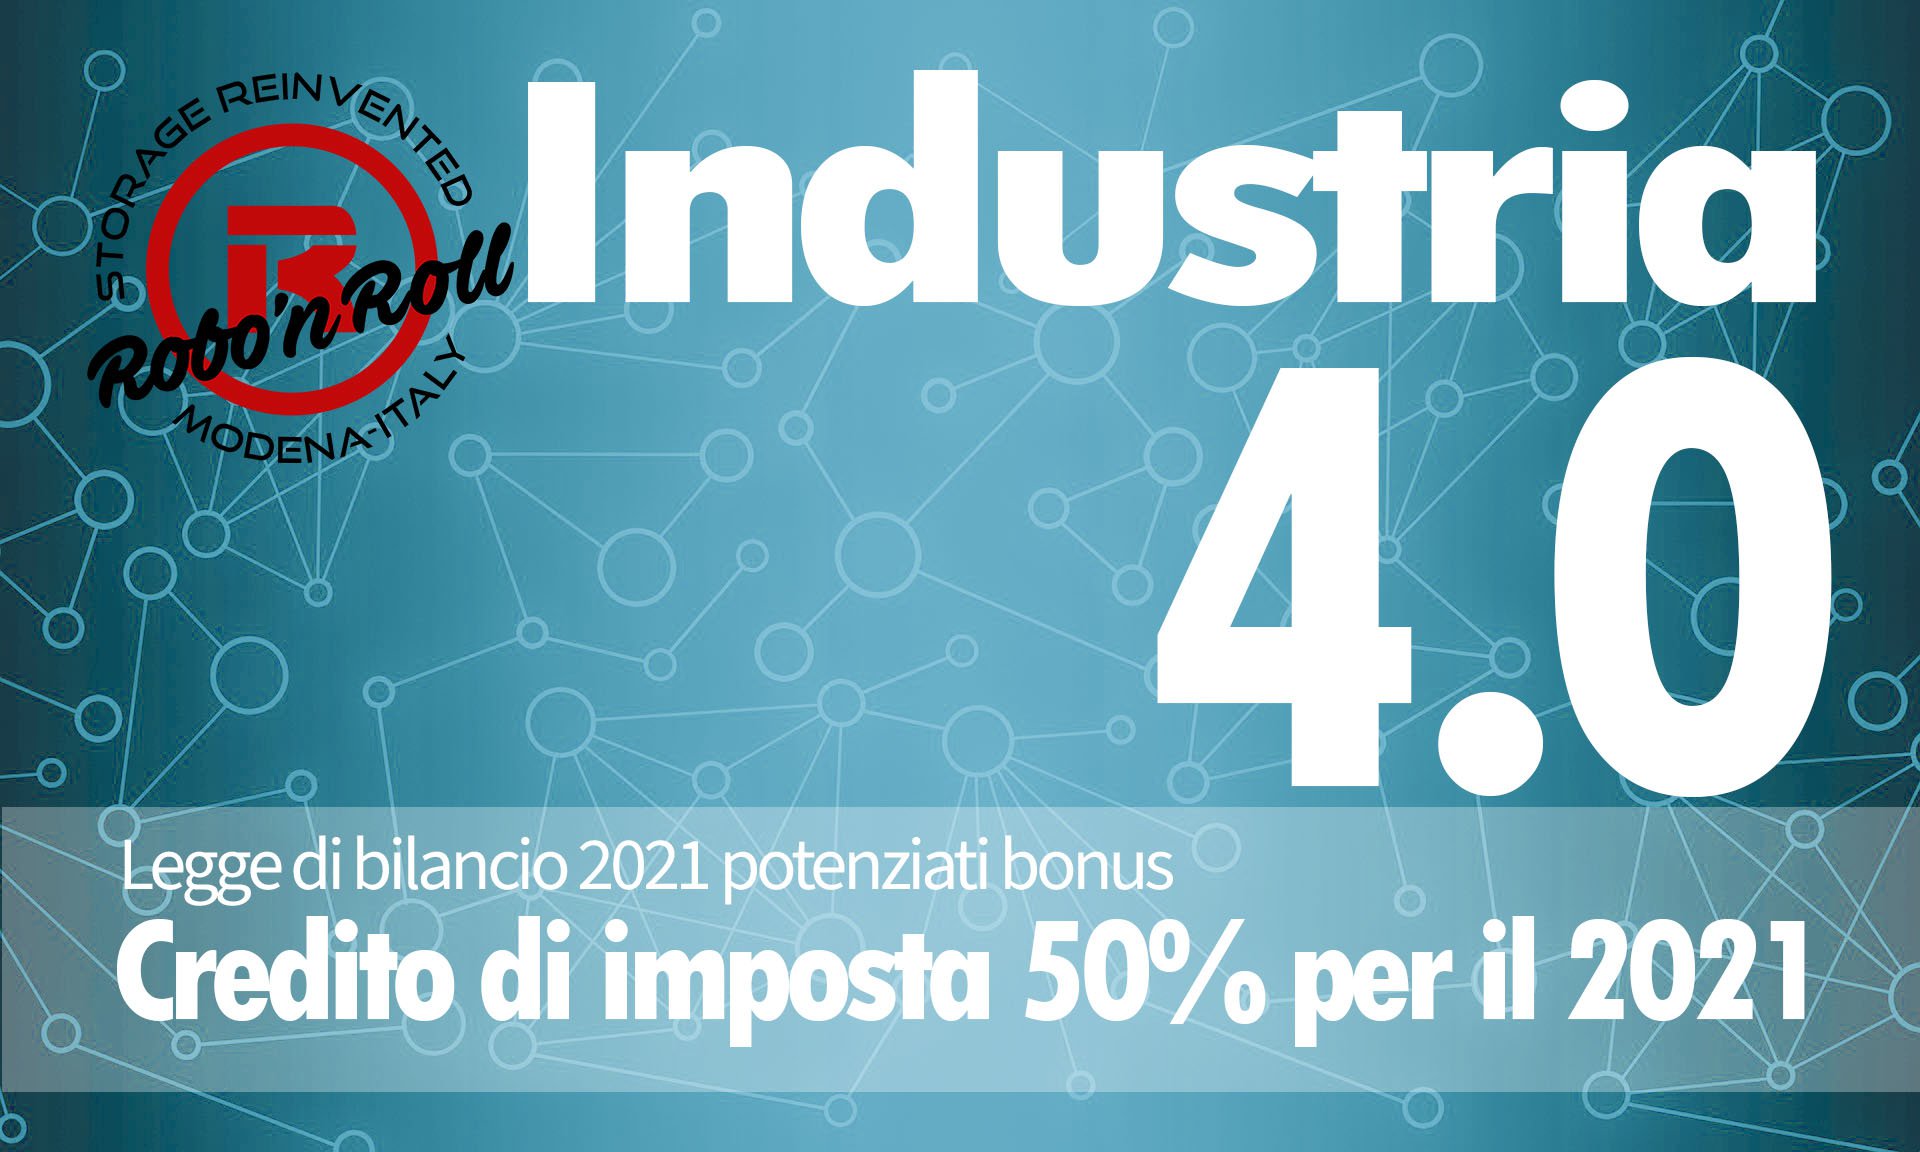 Credito imposta Industria 4.0